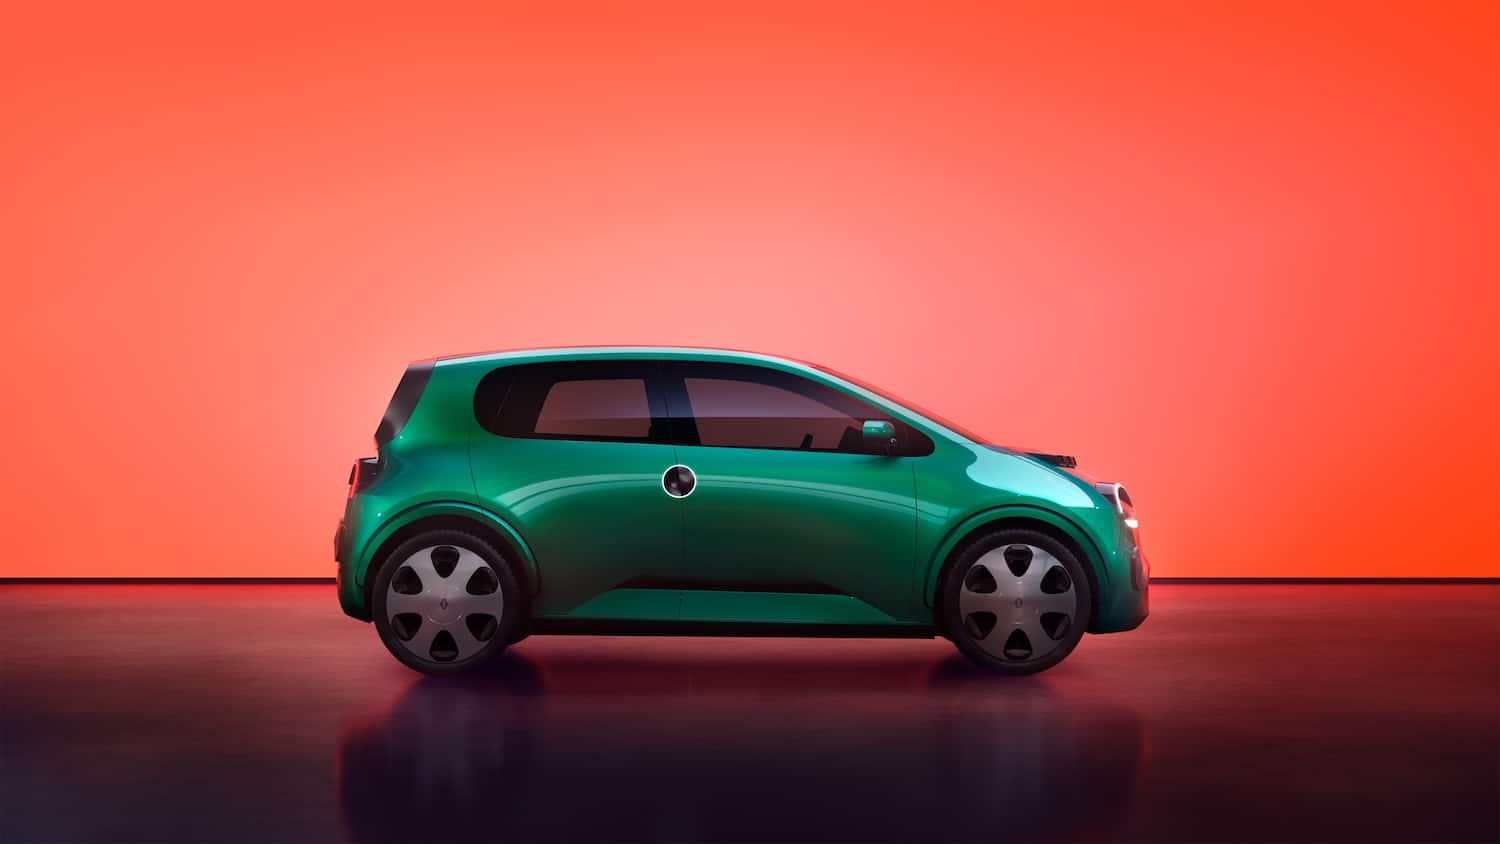 Face aux voitures électriques chinoises, Renault plaide pour une alliance des constructeurs européens